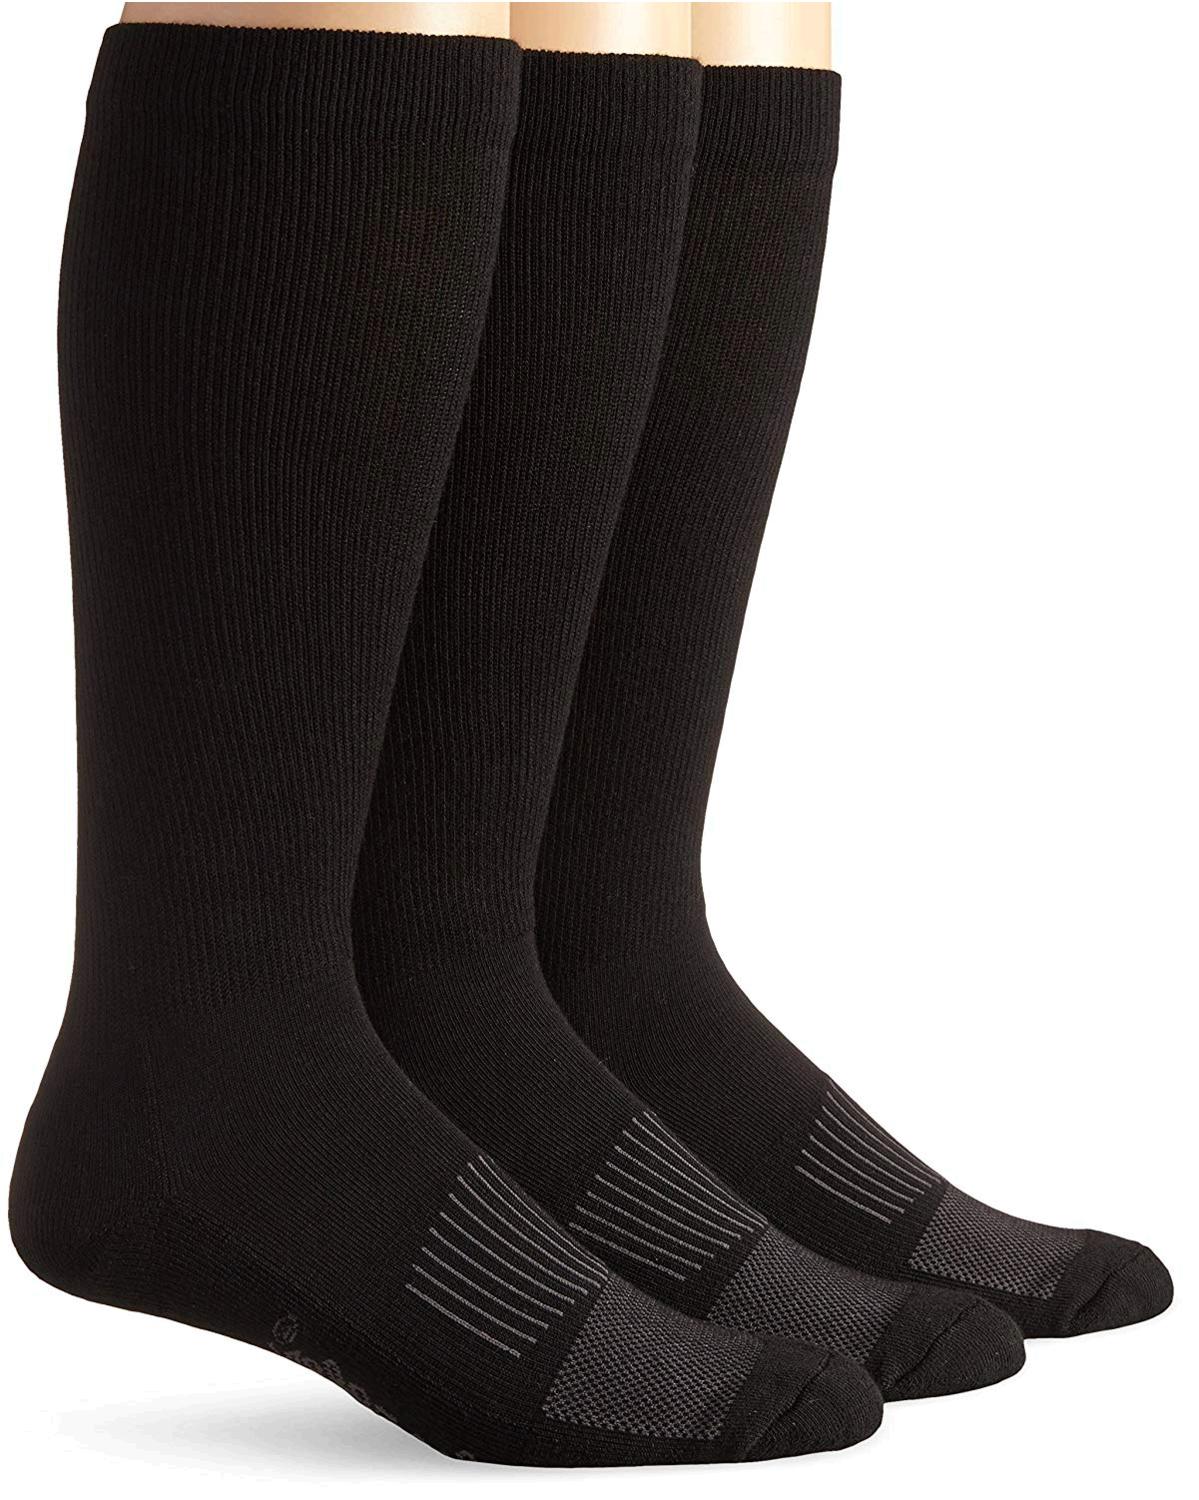 Wrangler Men's Western Boot Socks (Pack of 3),Black,Sock, Black, Size ...